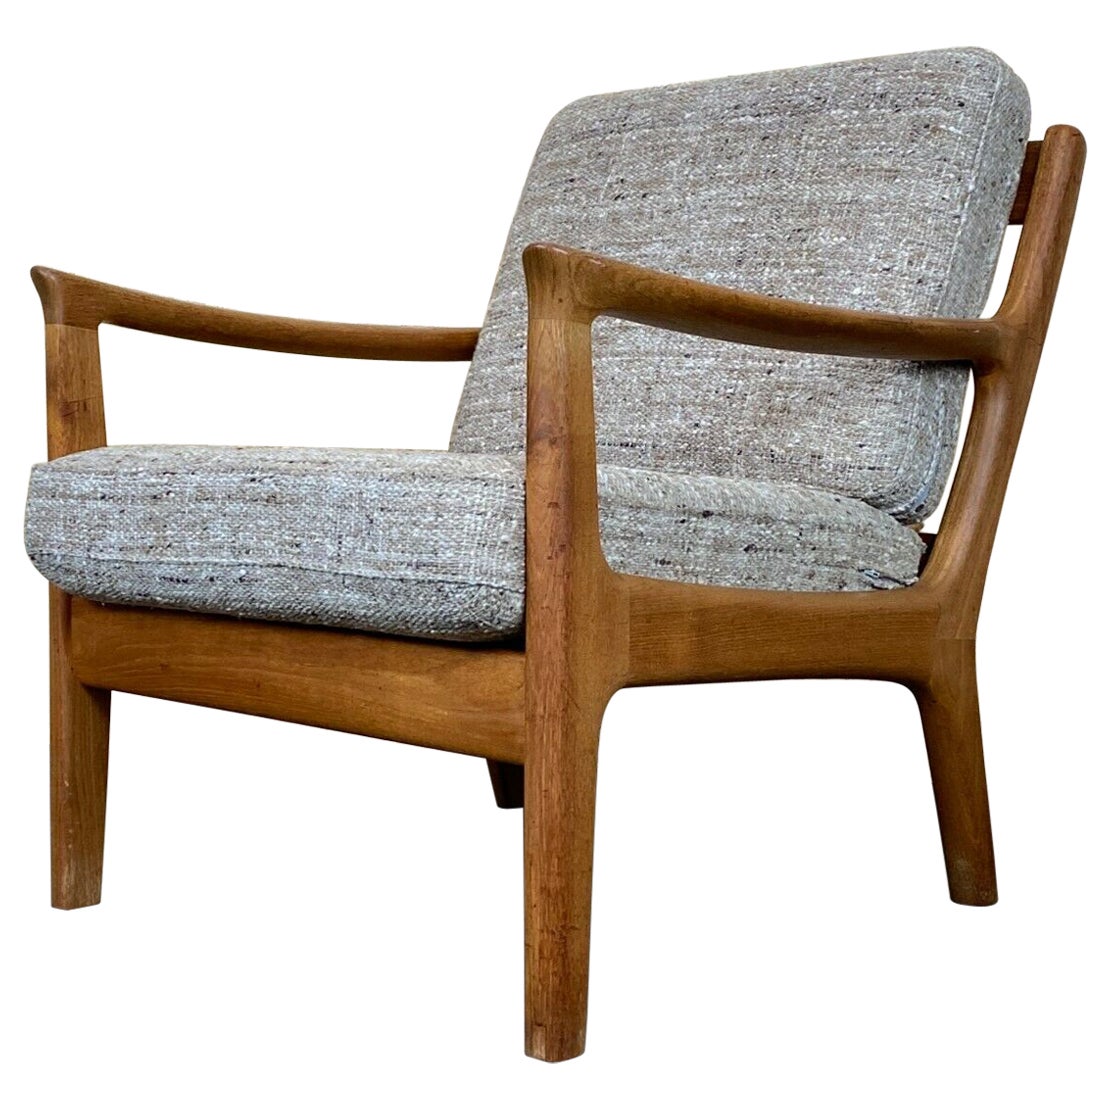 60s 70s Teak Easy Chair Juul Kristensen Danish Denmark Design 